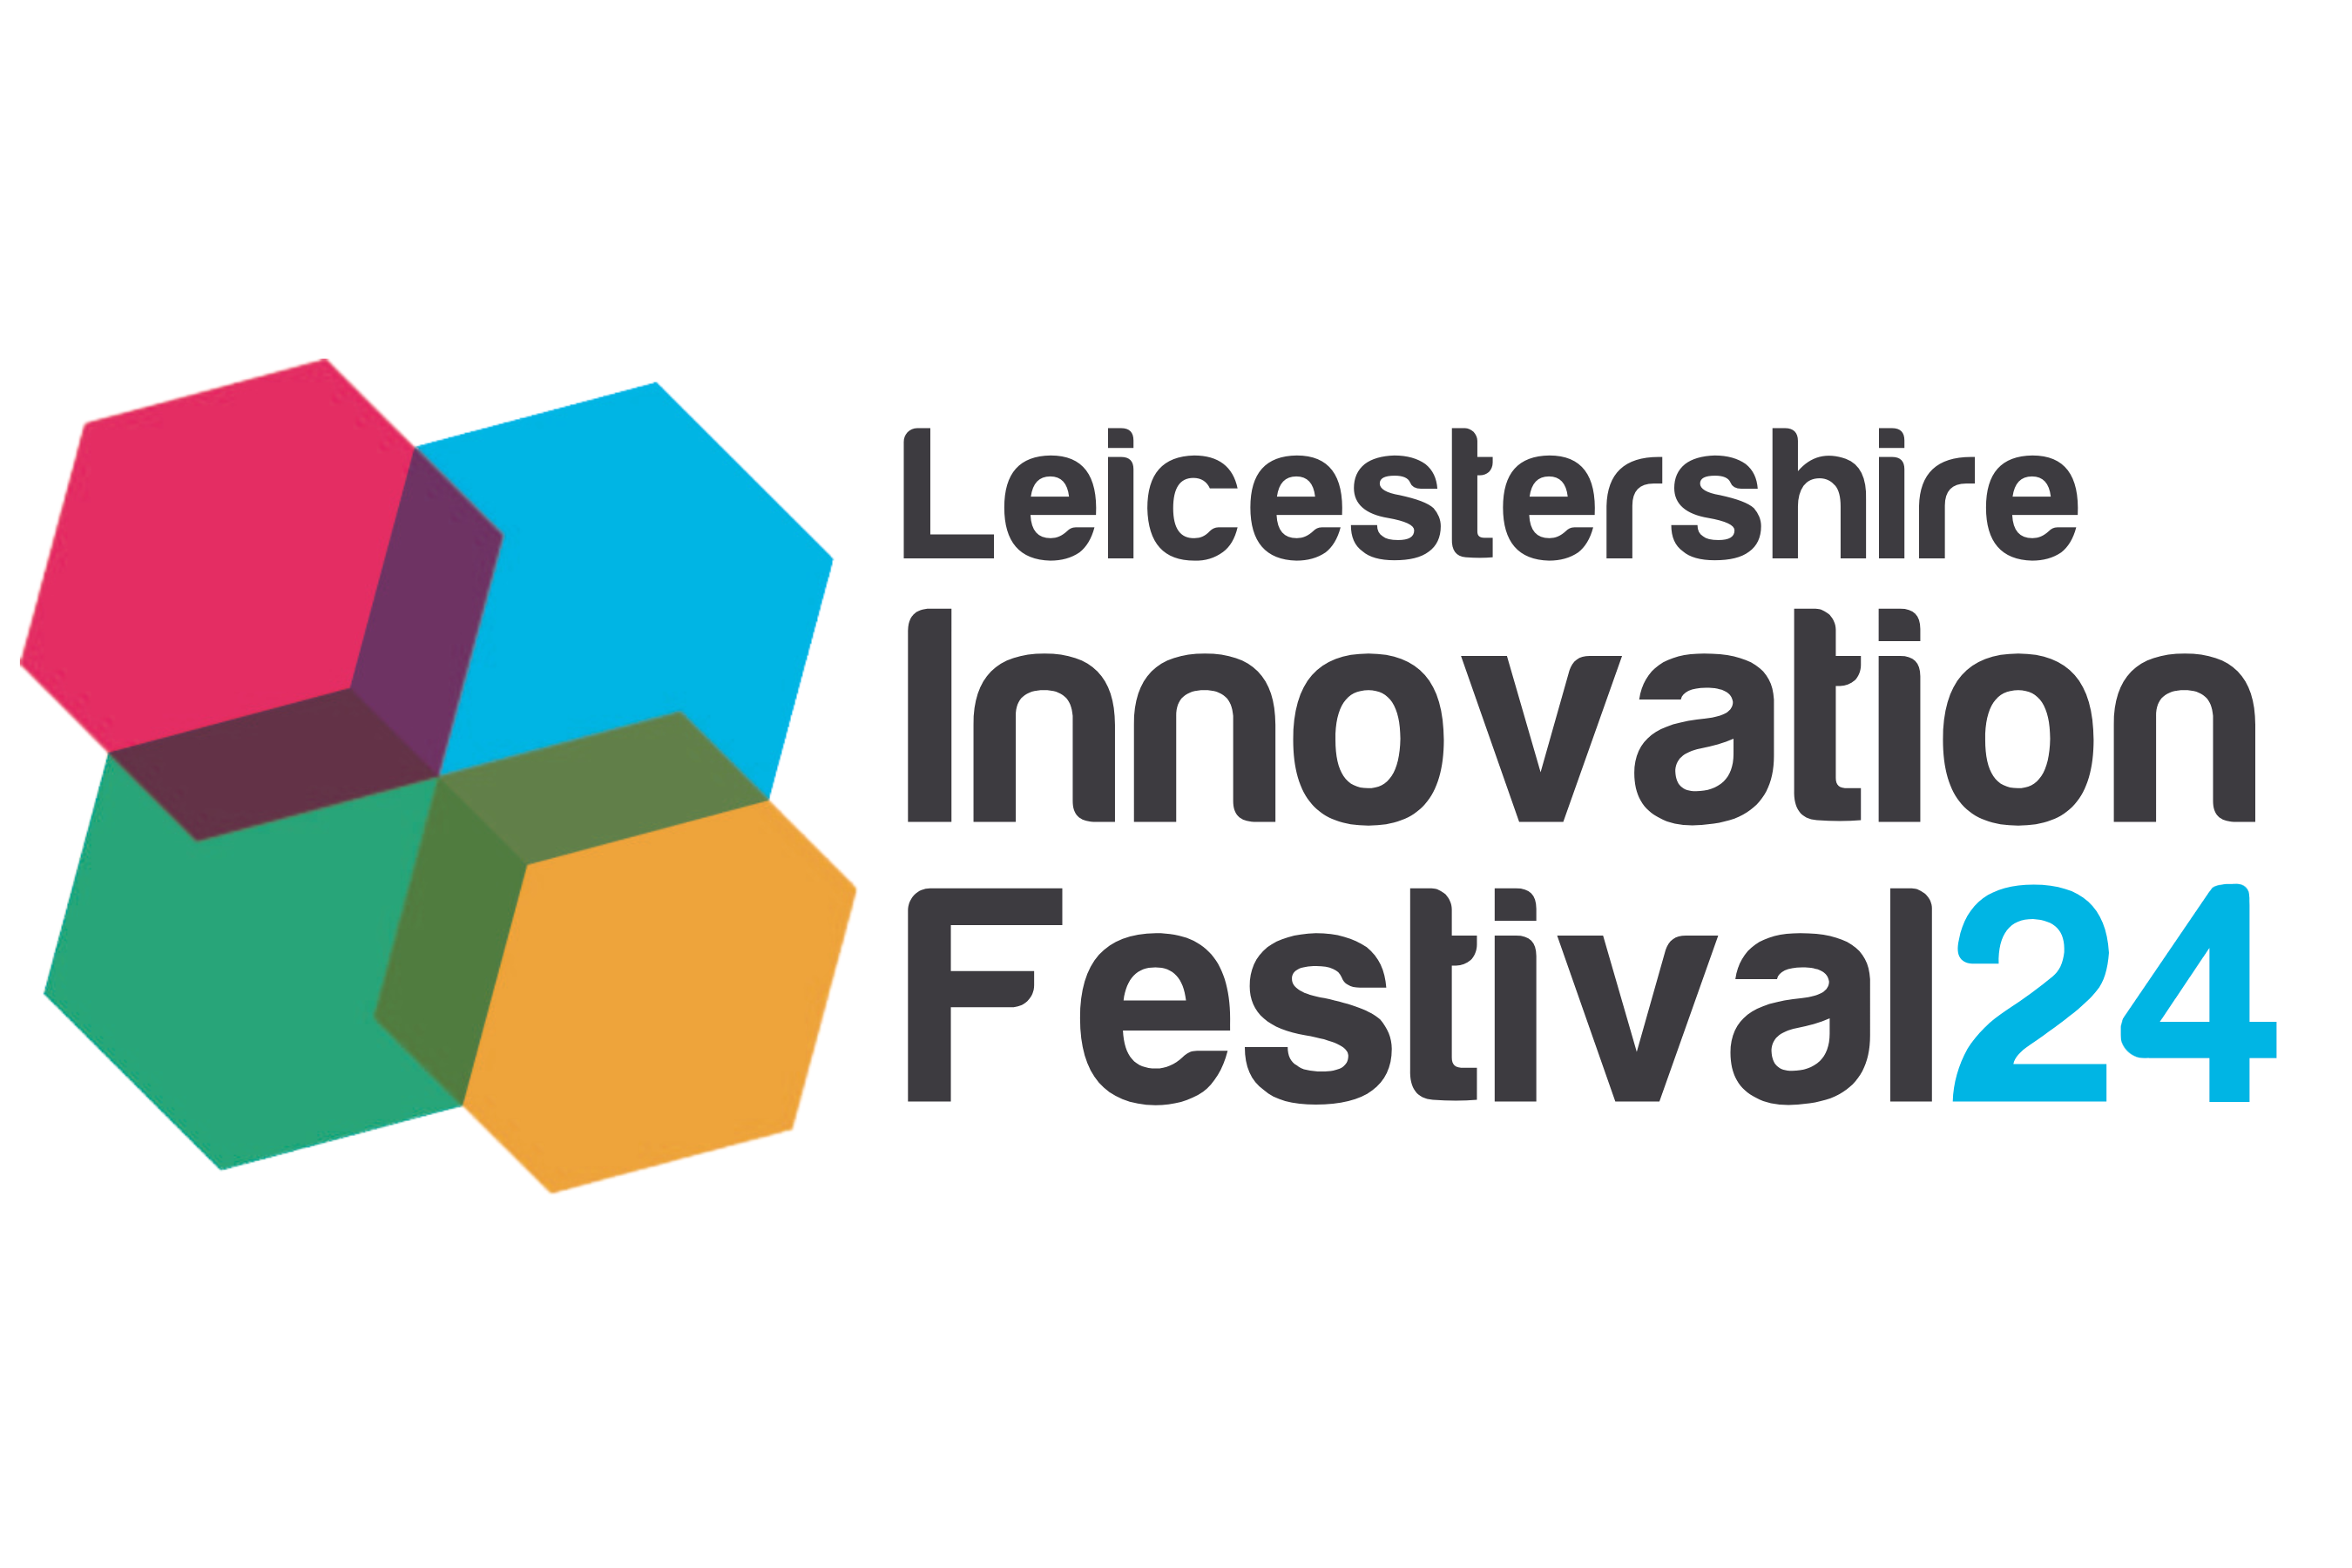 Innovation Festival 24 logo